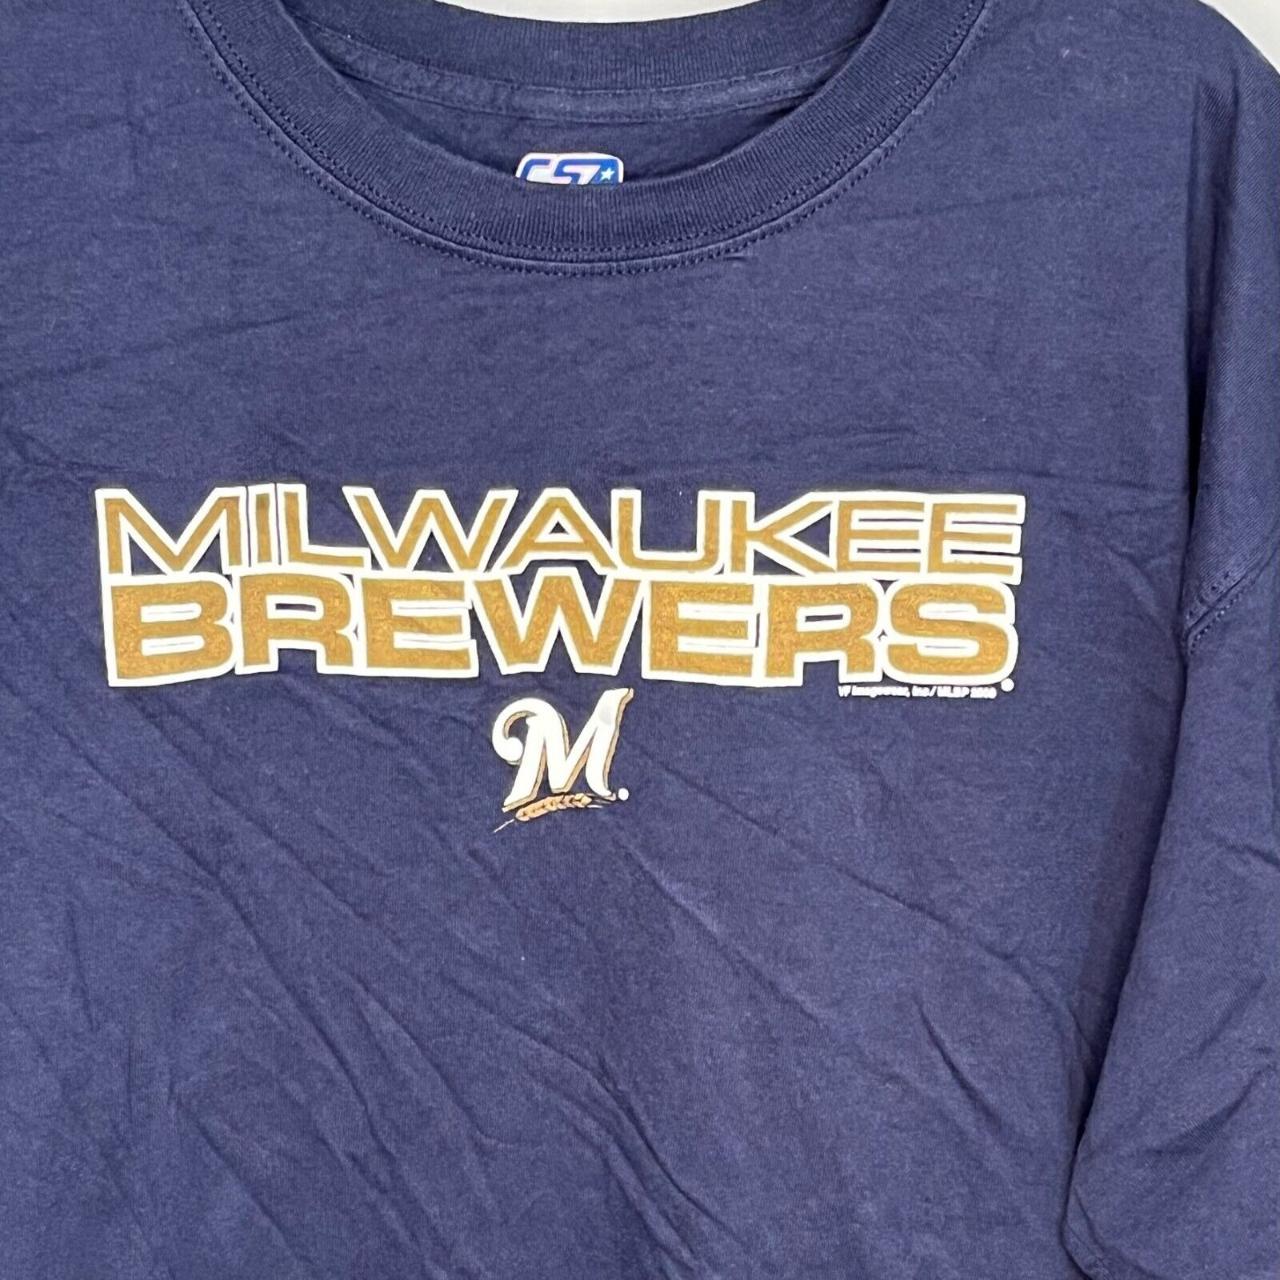 Milwaukee Brewers T-Shirt Men's XL Blue MLB Crewneck Cotton Short Sleeve